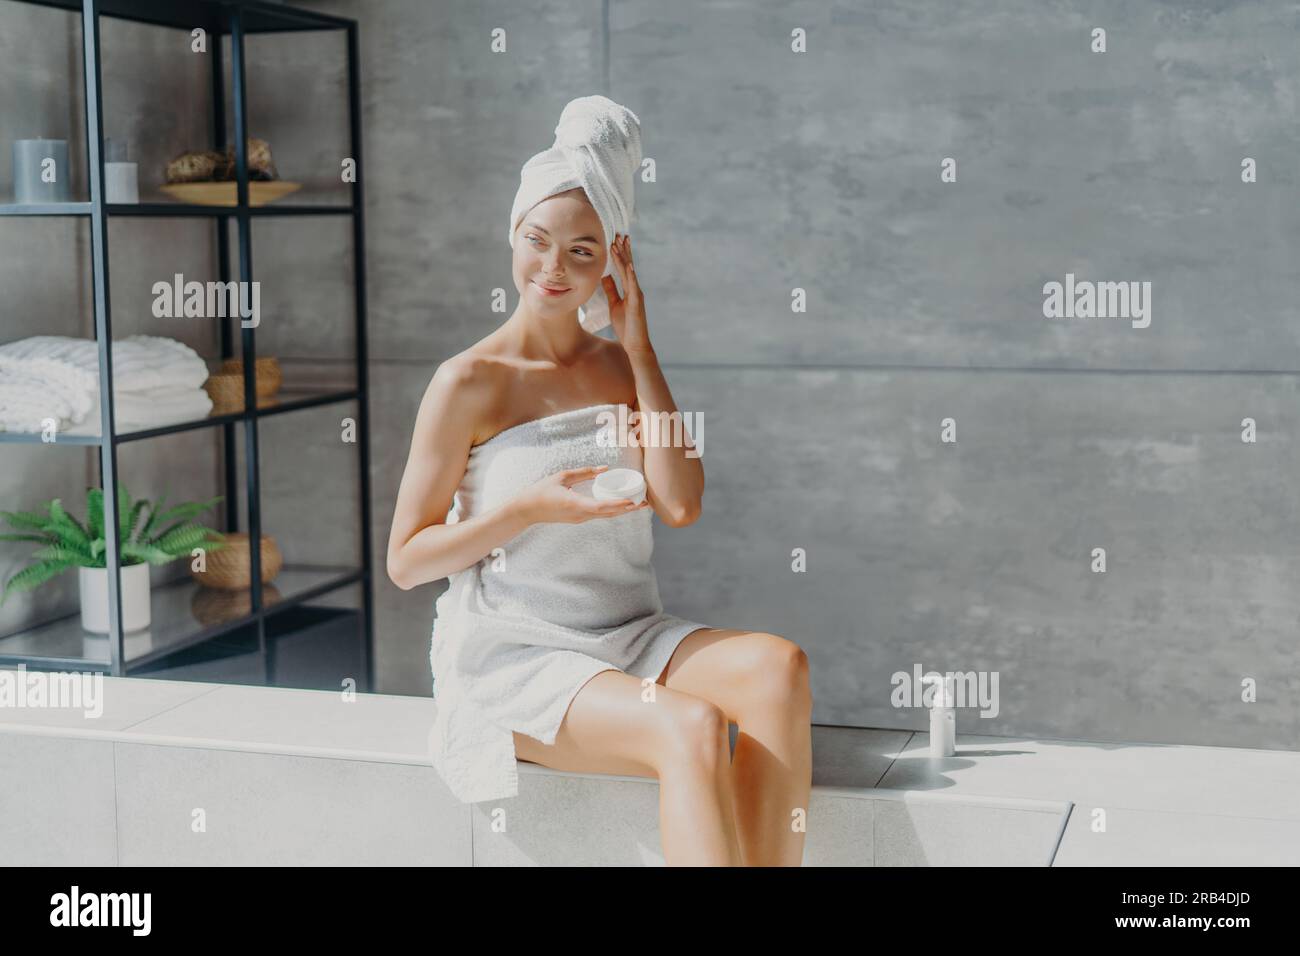 Femme européenne rêveuse applique la crème pour le corps, enveloppée dans une serviette. Santé, concept de beauté. Salle de bains pour se faire dorloter Banque D'Images